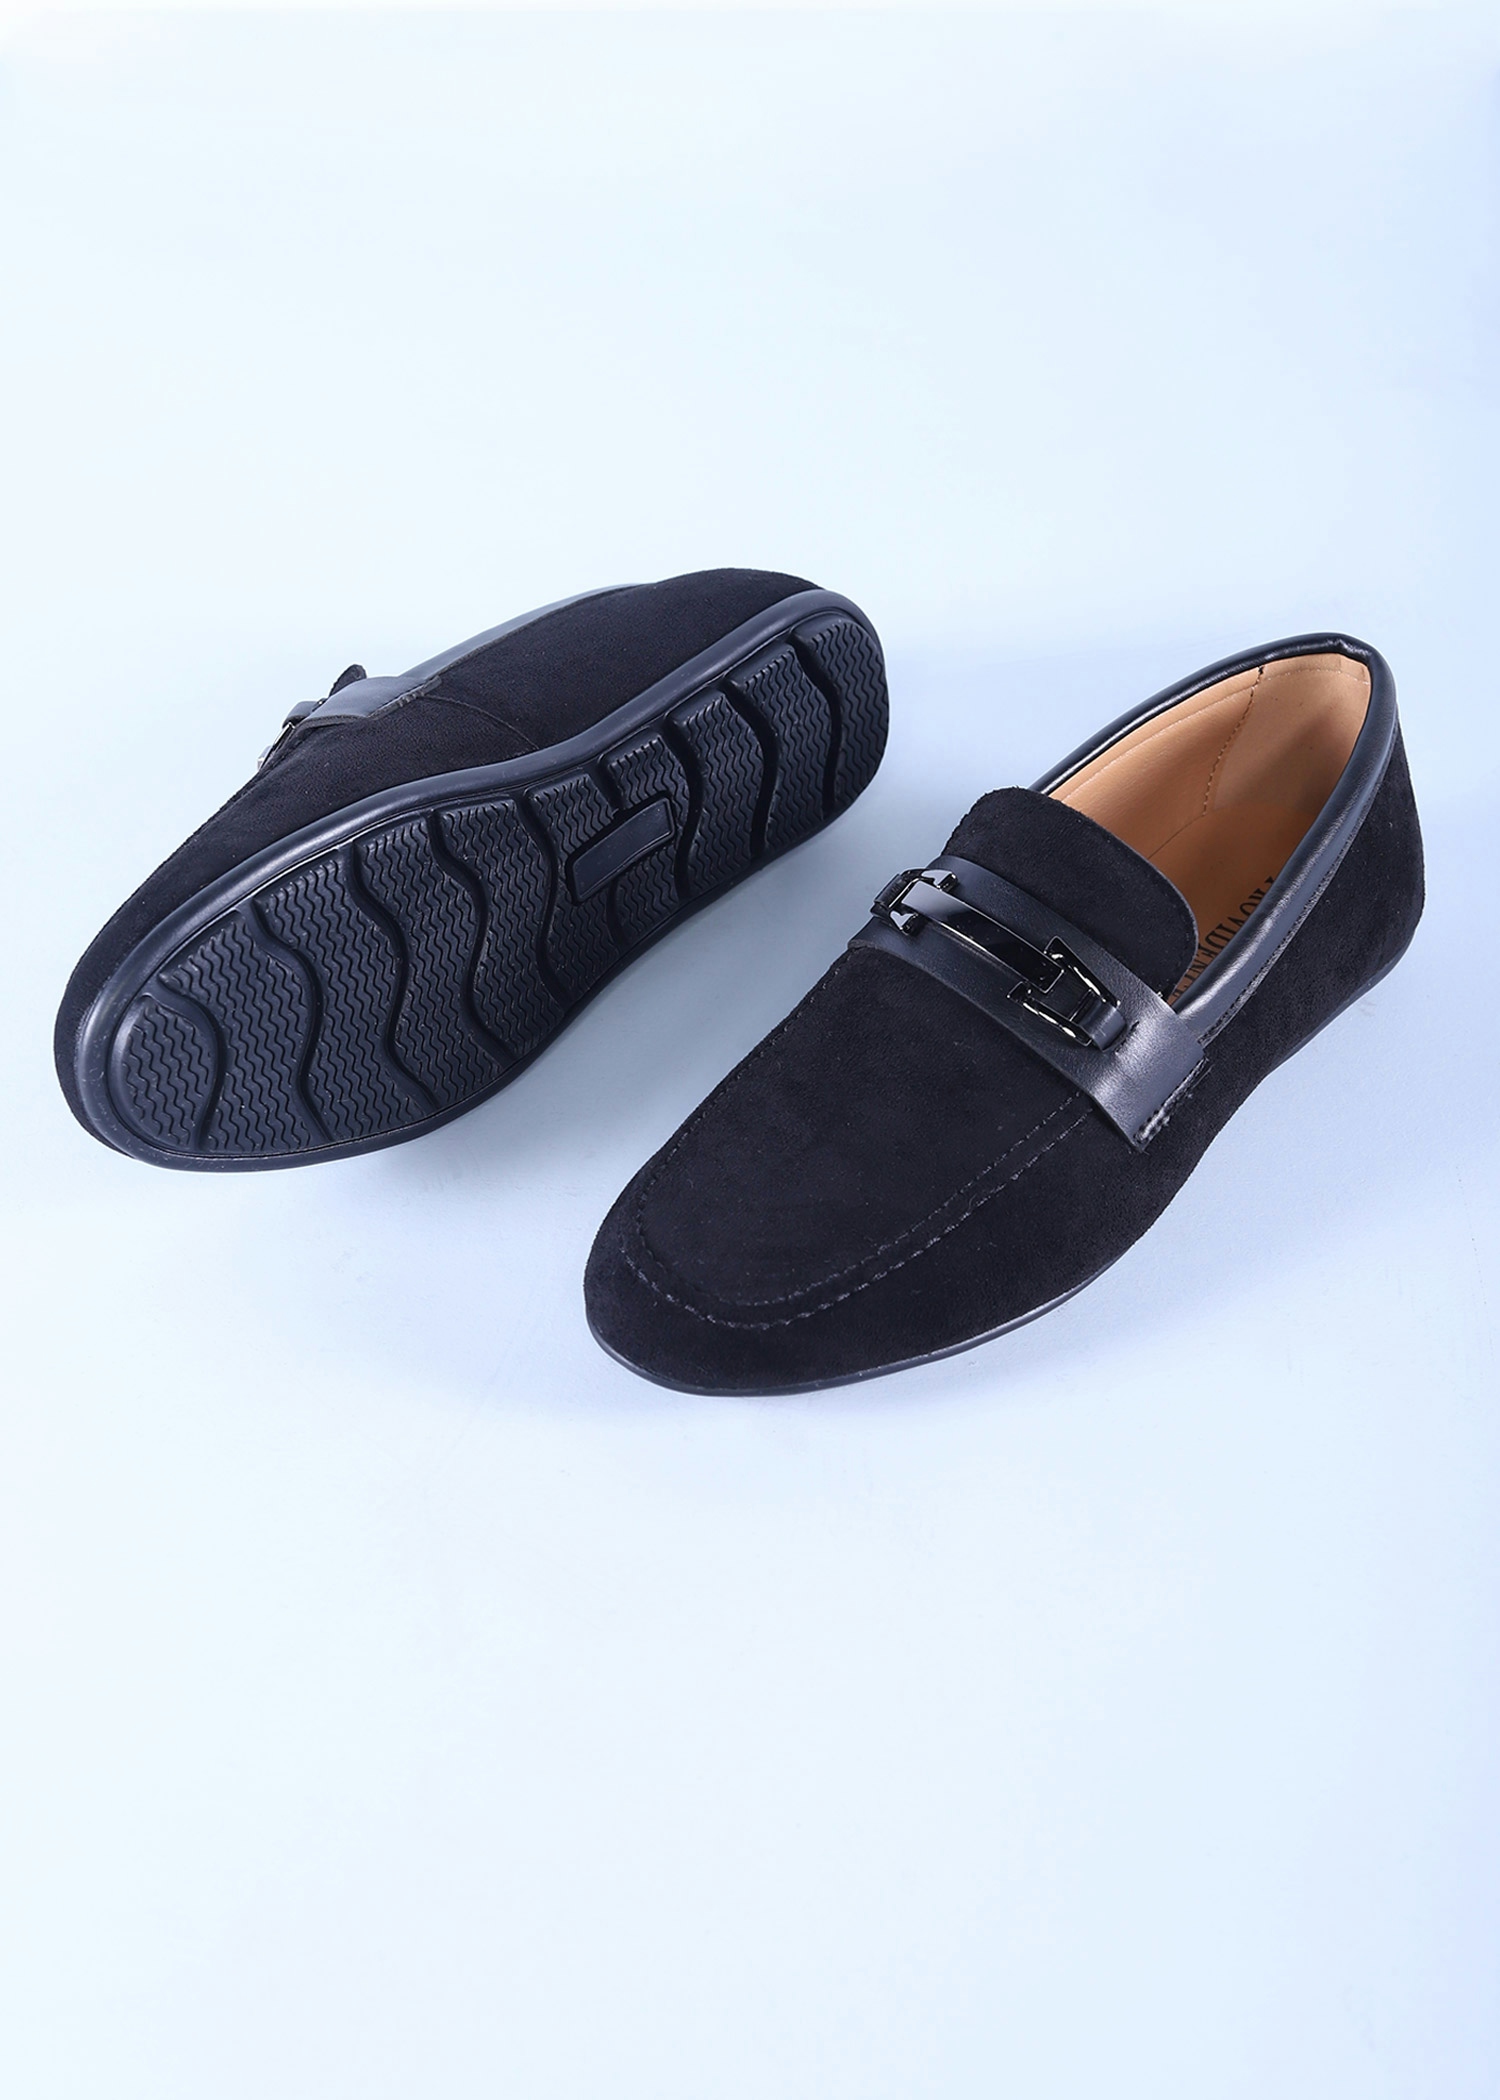 tagus mens shoes black color sole